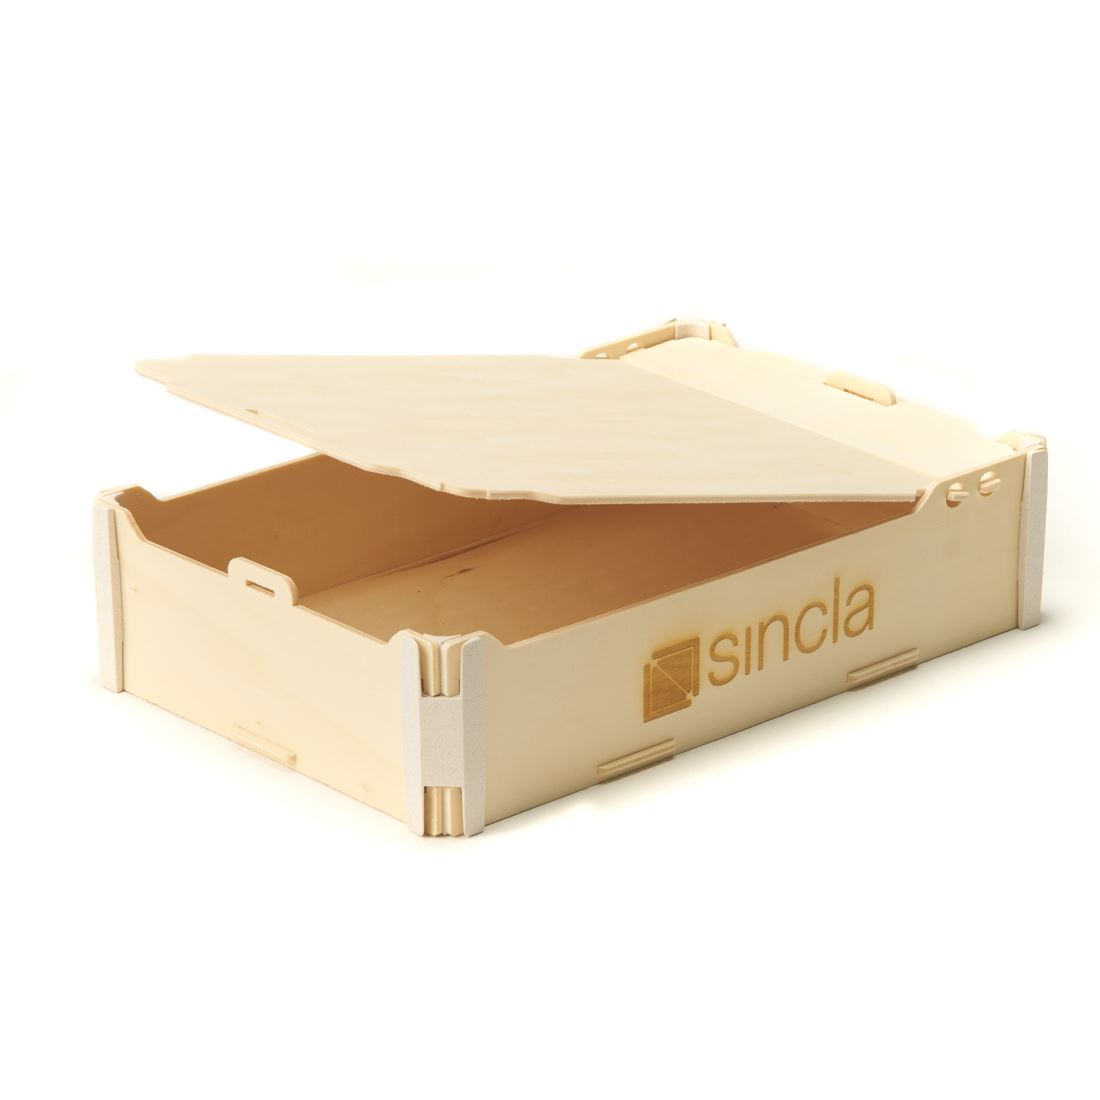 Cajas de madera vintage – 6 consejos para decorarlas – Sincla